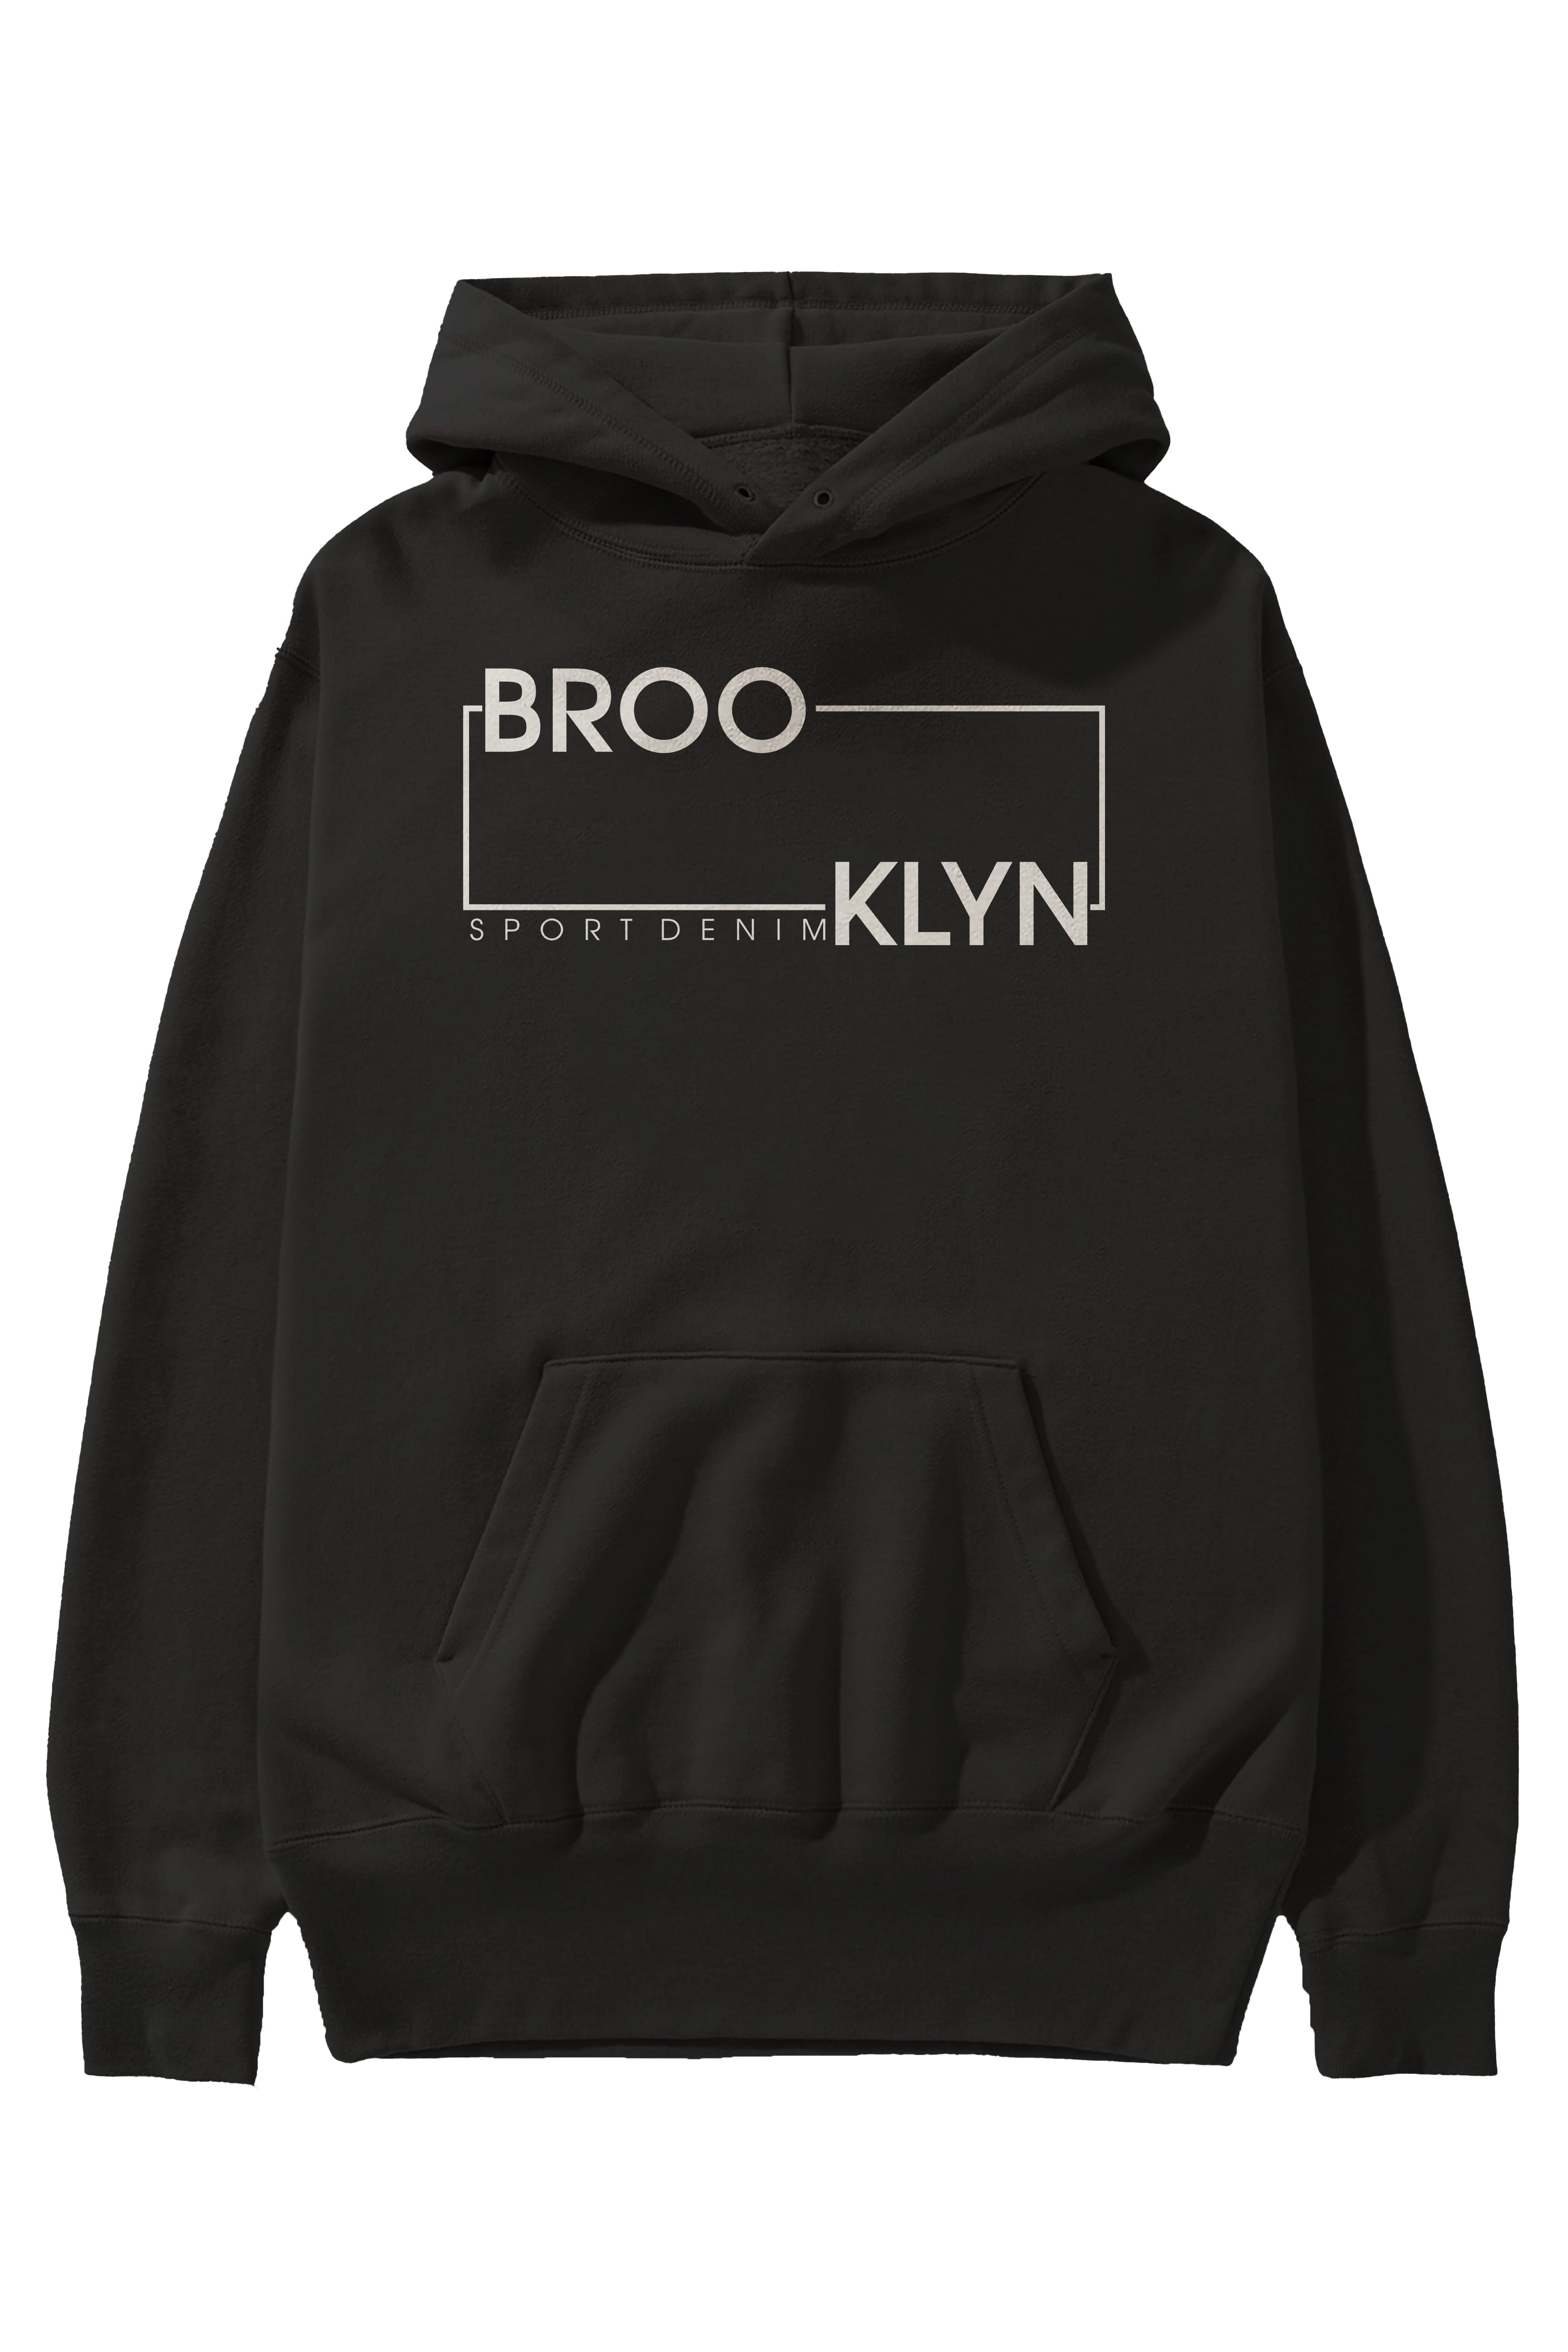 Brooklyn Sport Ön Baskılı Oversize Hoodie Kapüşonlu Sweatshirt Erkek Kadın Unisex